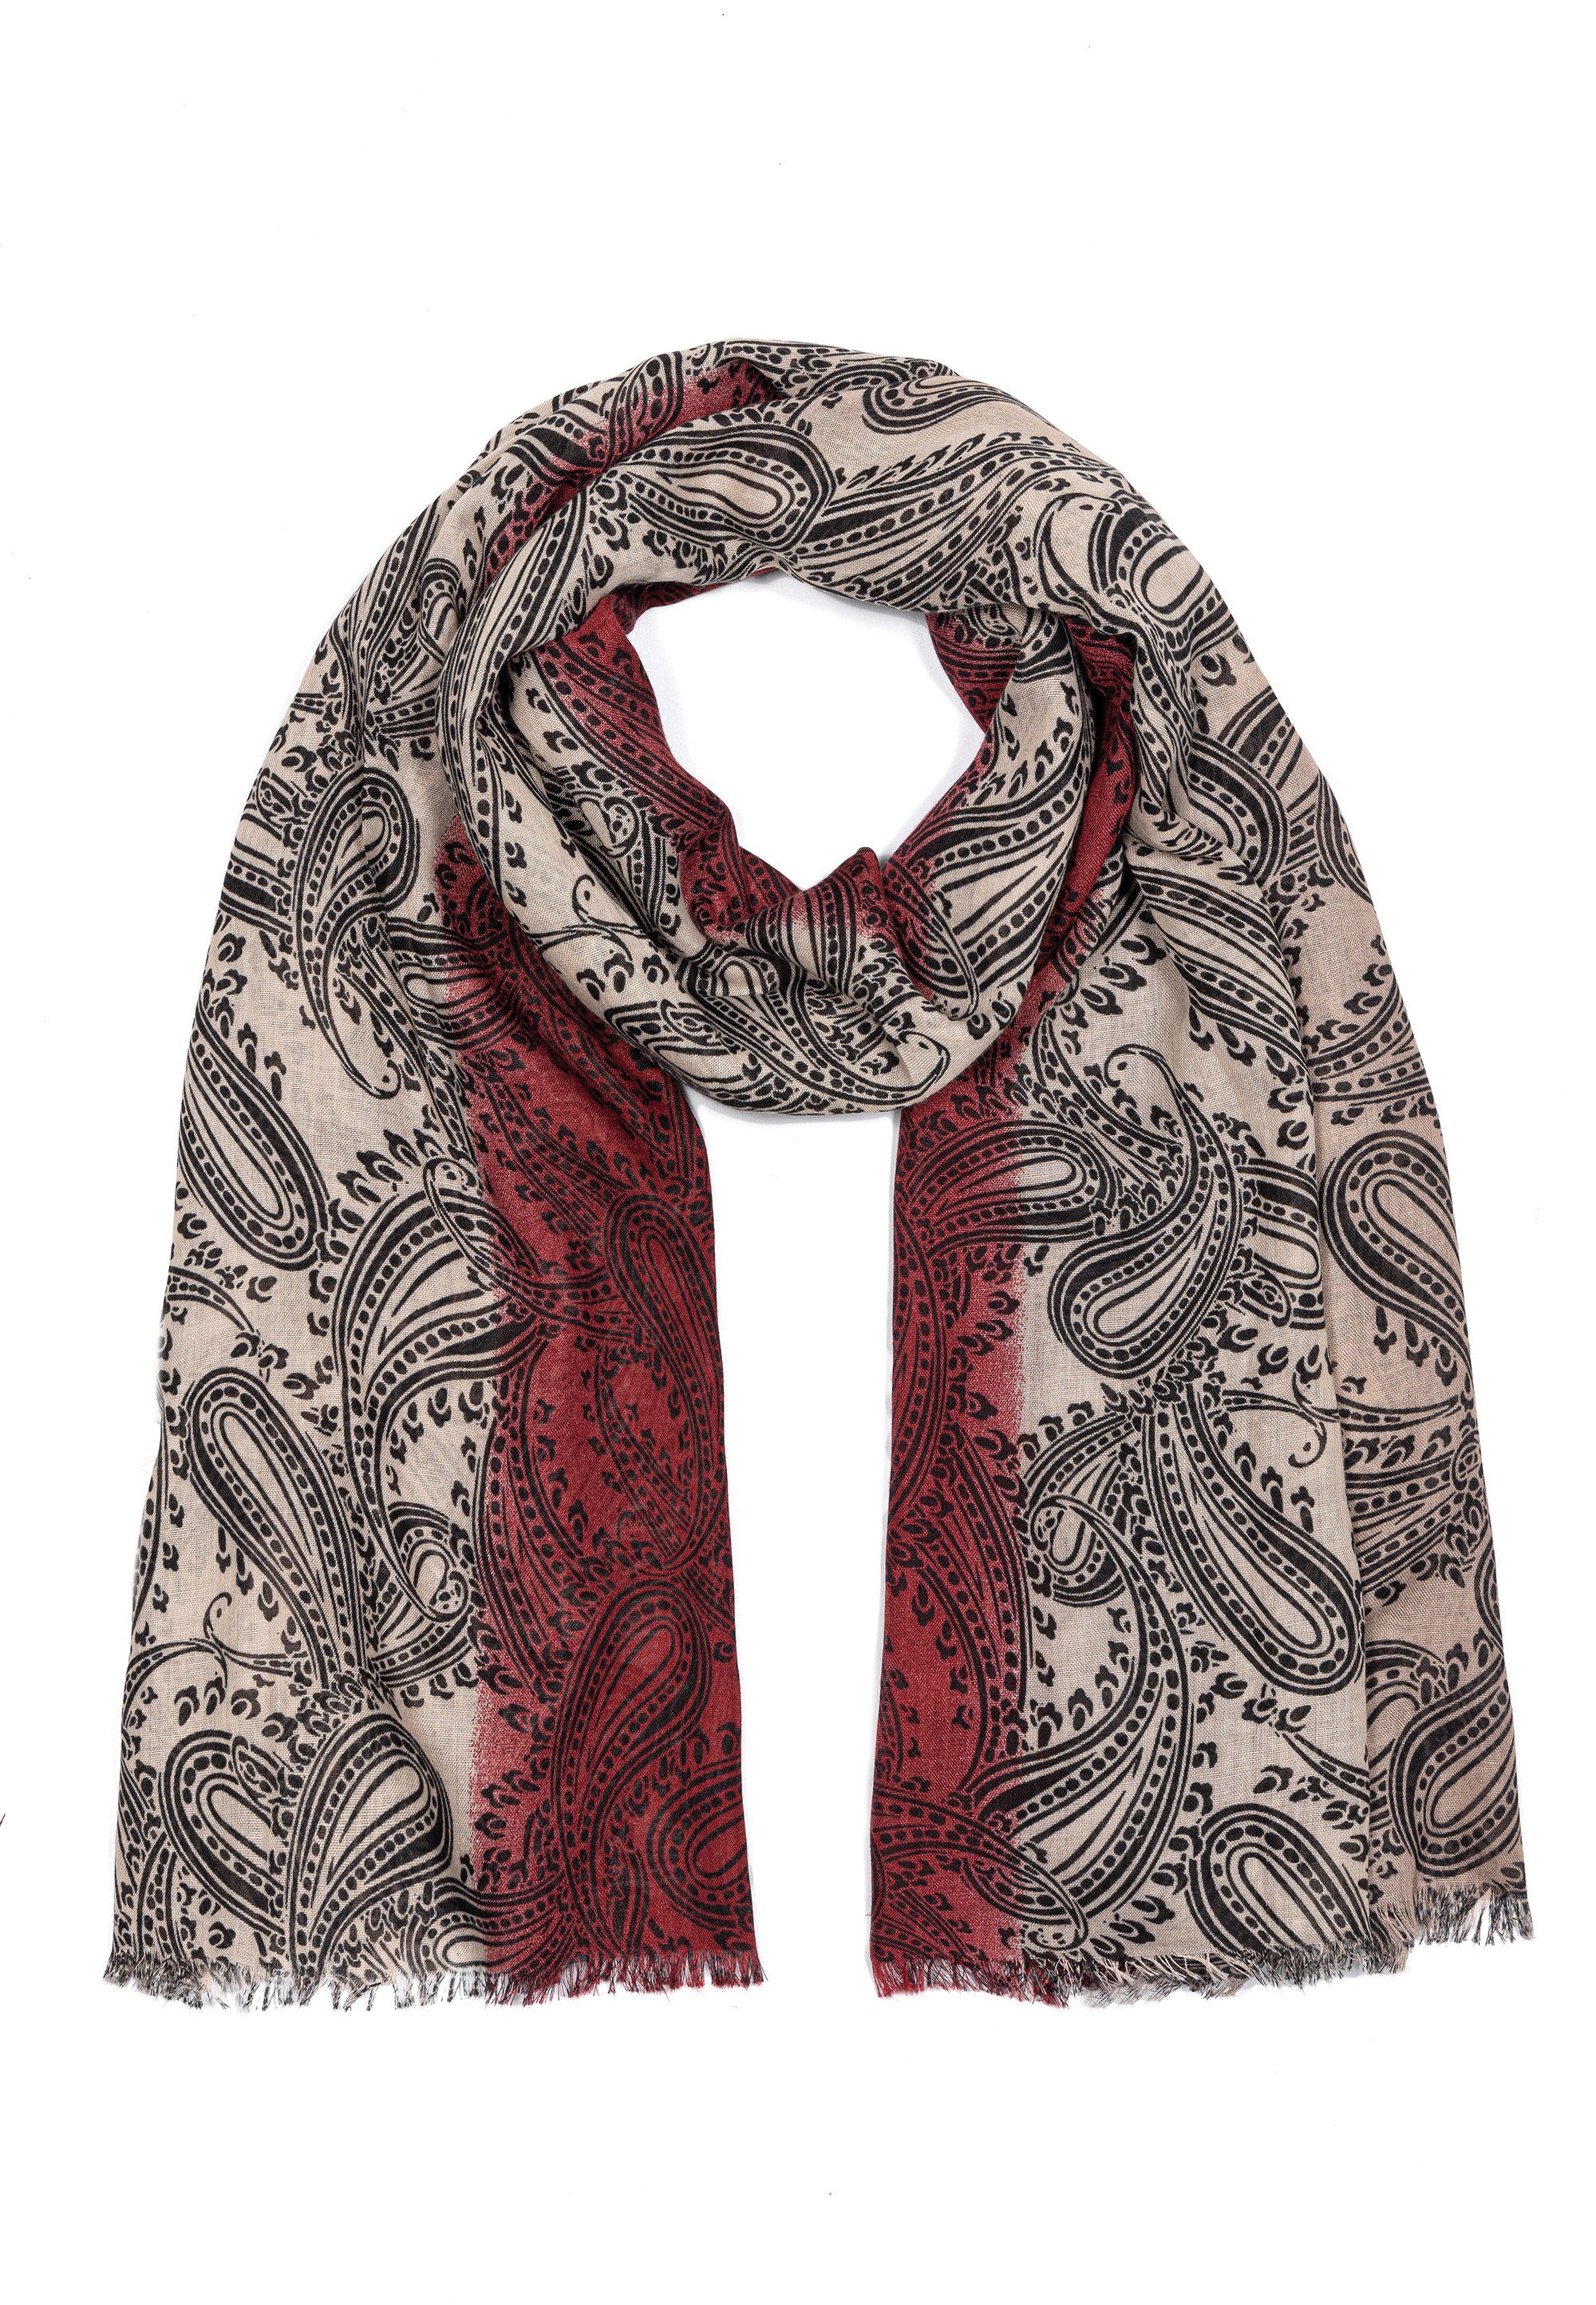 Design Damen hochwertiges Material Verarbeitung Modeschal hochwertige tollen Farben, Sehr Schal und Goodman mit Farbspiel Rot